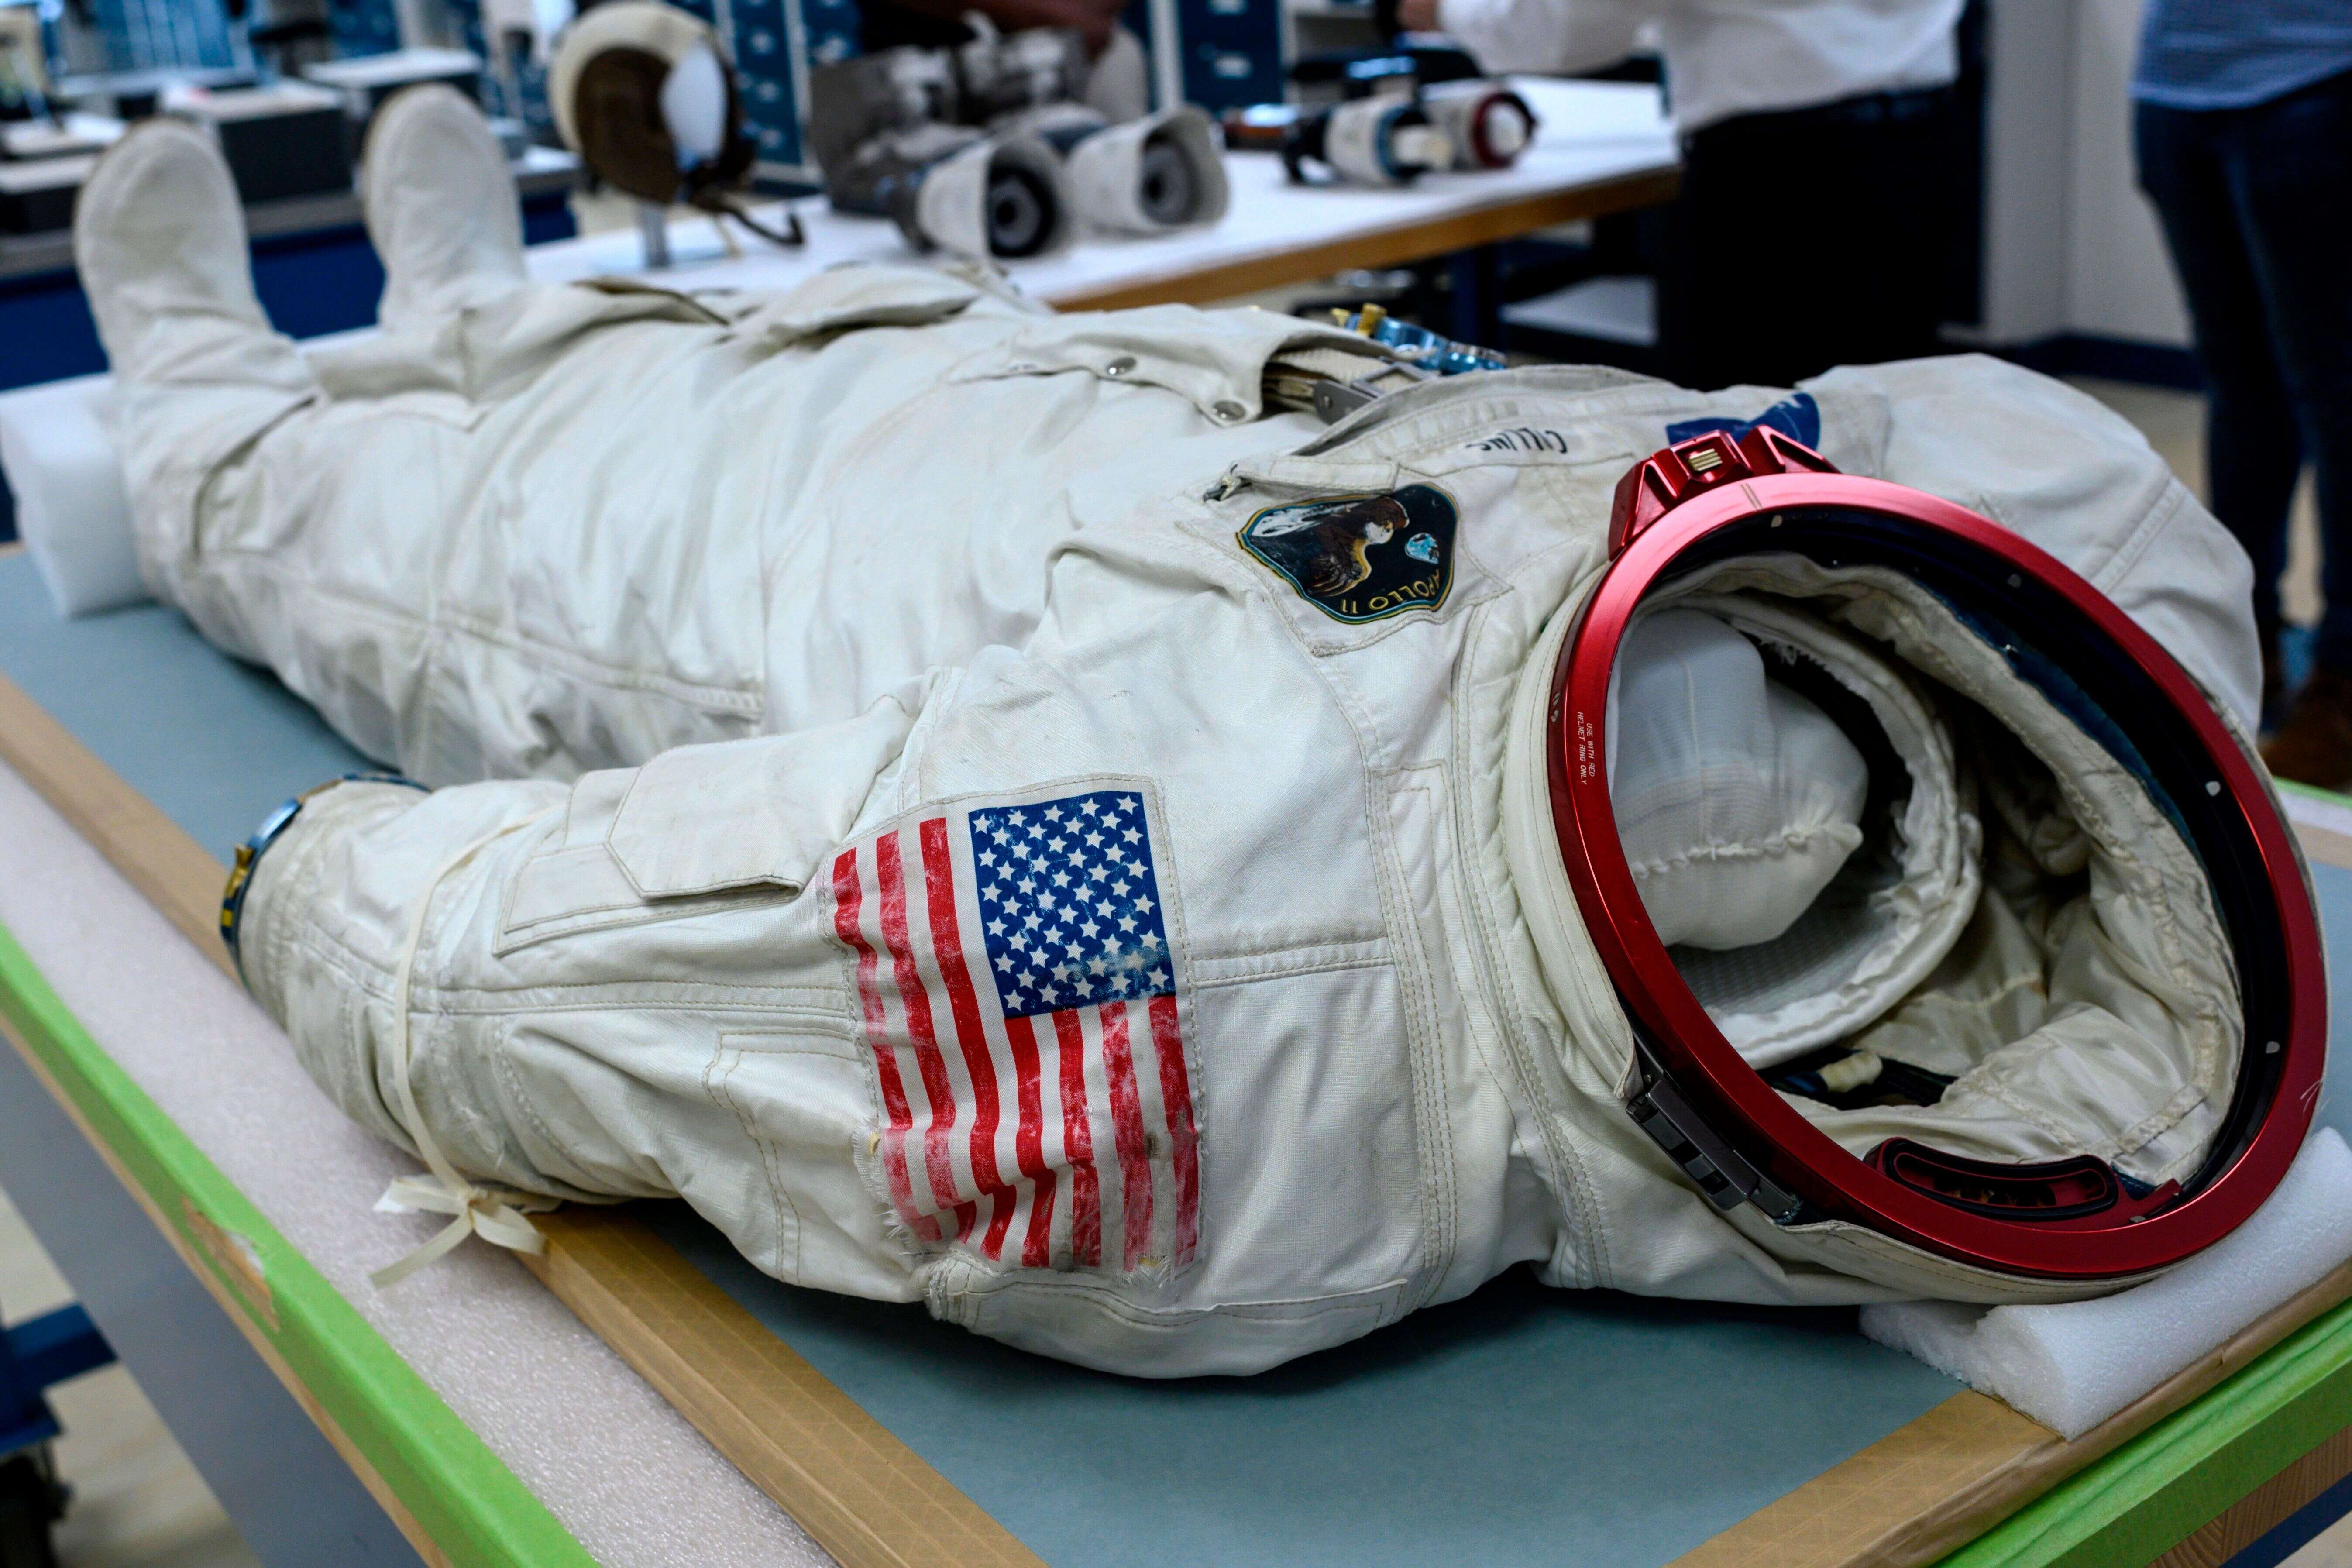 Les équipements de Neil Armstrong et ses co-équipiers lors de la mission Apollo 11 sont en cours de restauration dans un atelier du musée de l'Air et de l'Espace de Washington.